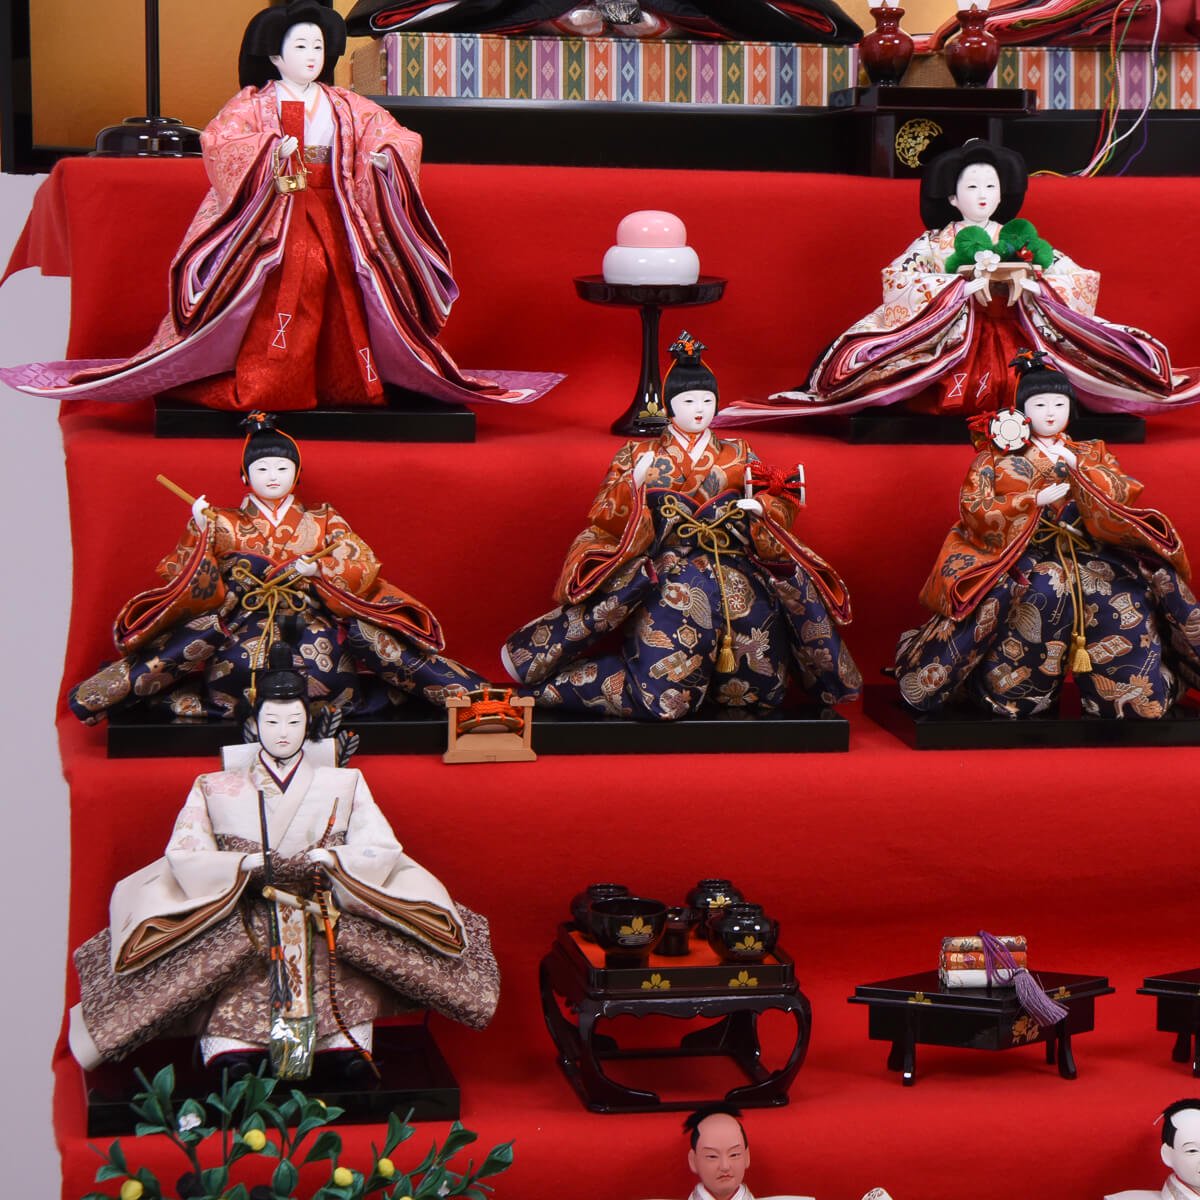 展示品】ひな人形 豪華三段飾り 雛人形 380000円のお品 - ひな人形